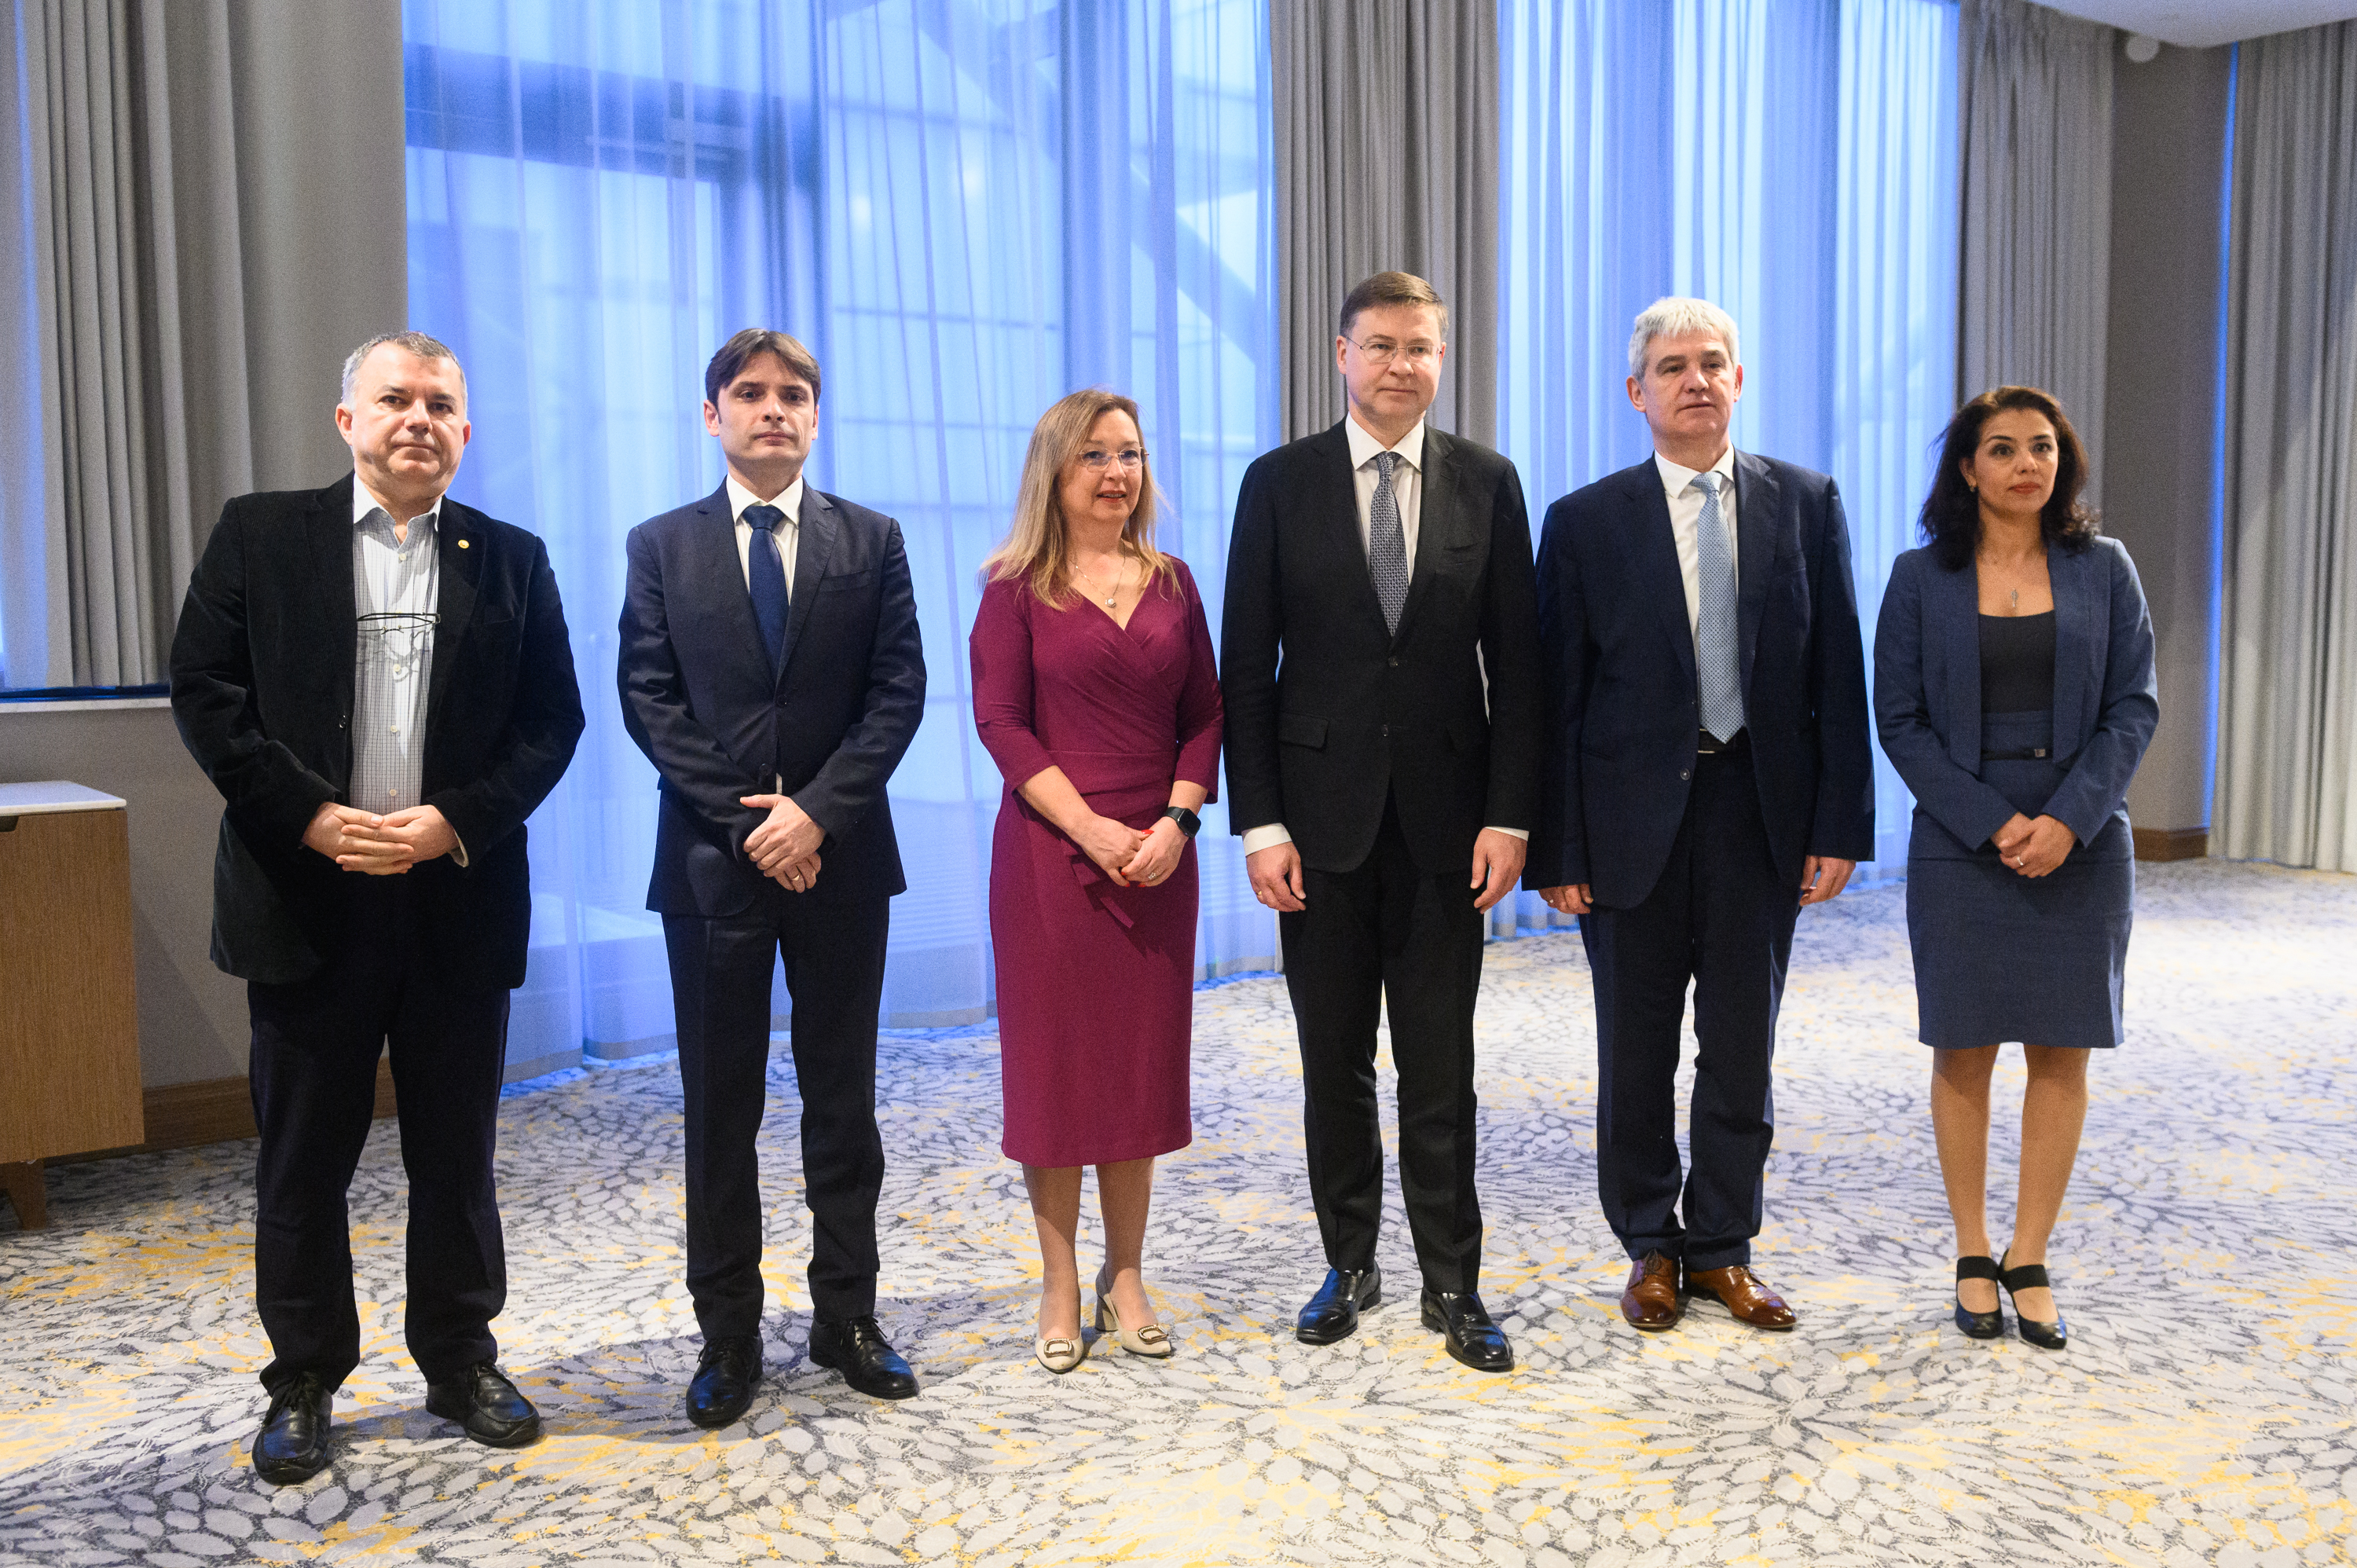 Проведе се работна среща с Валдис Домбровскис за предизвикателствата пред България по пътя към Еврозоната